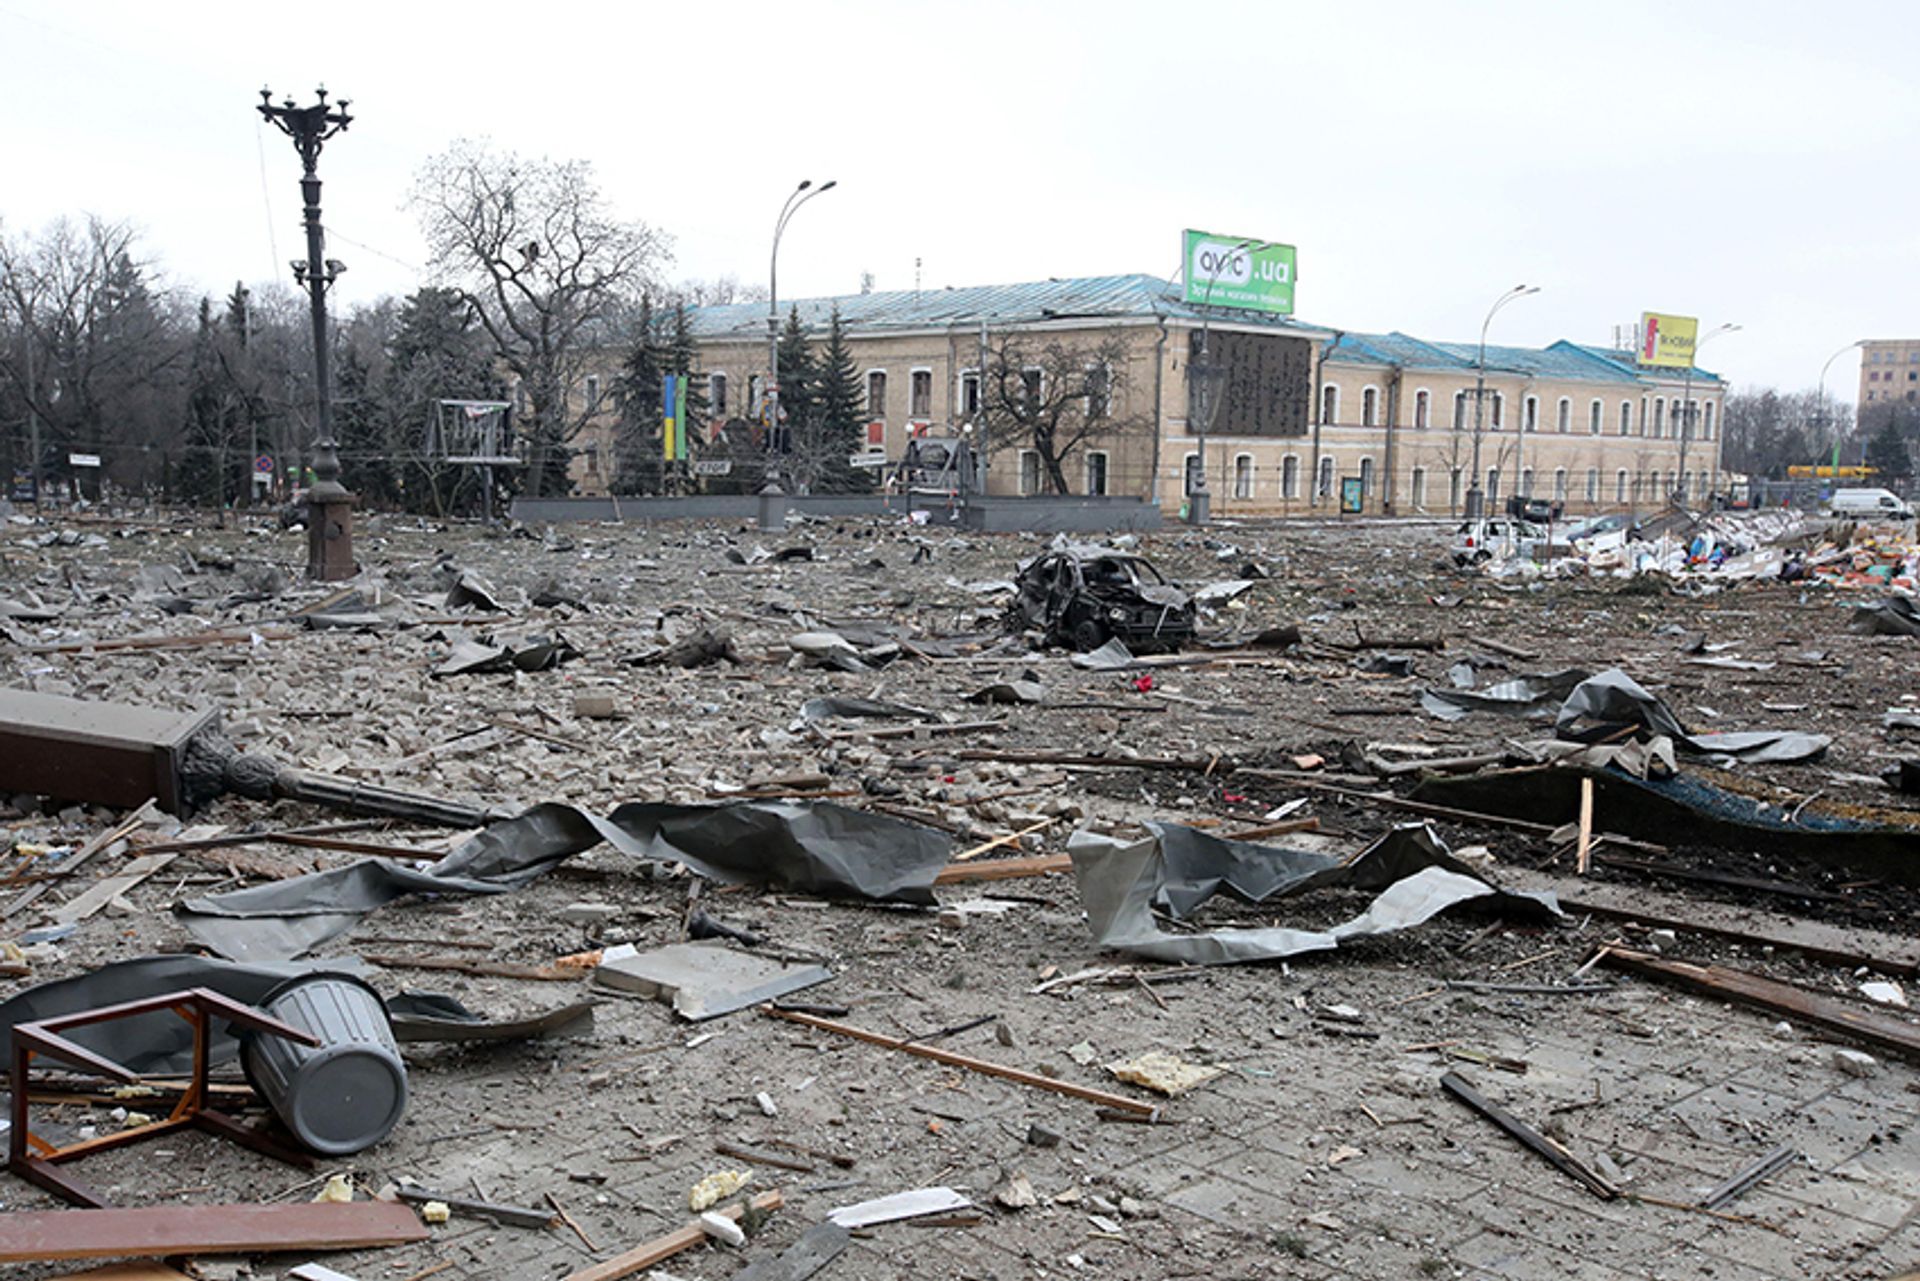 כיכר סבובודי (החופש) בחרקוב, צפון מזרח אוקראינה, מלאה הריסות לאחר פגיעת טילים של כוחות רוסים ב-1 במרץ.

© צילום של ויאצ'סלב מדייבסקי/Ukrinform/abacapress.com